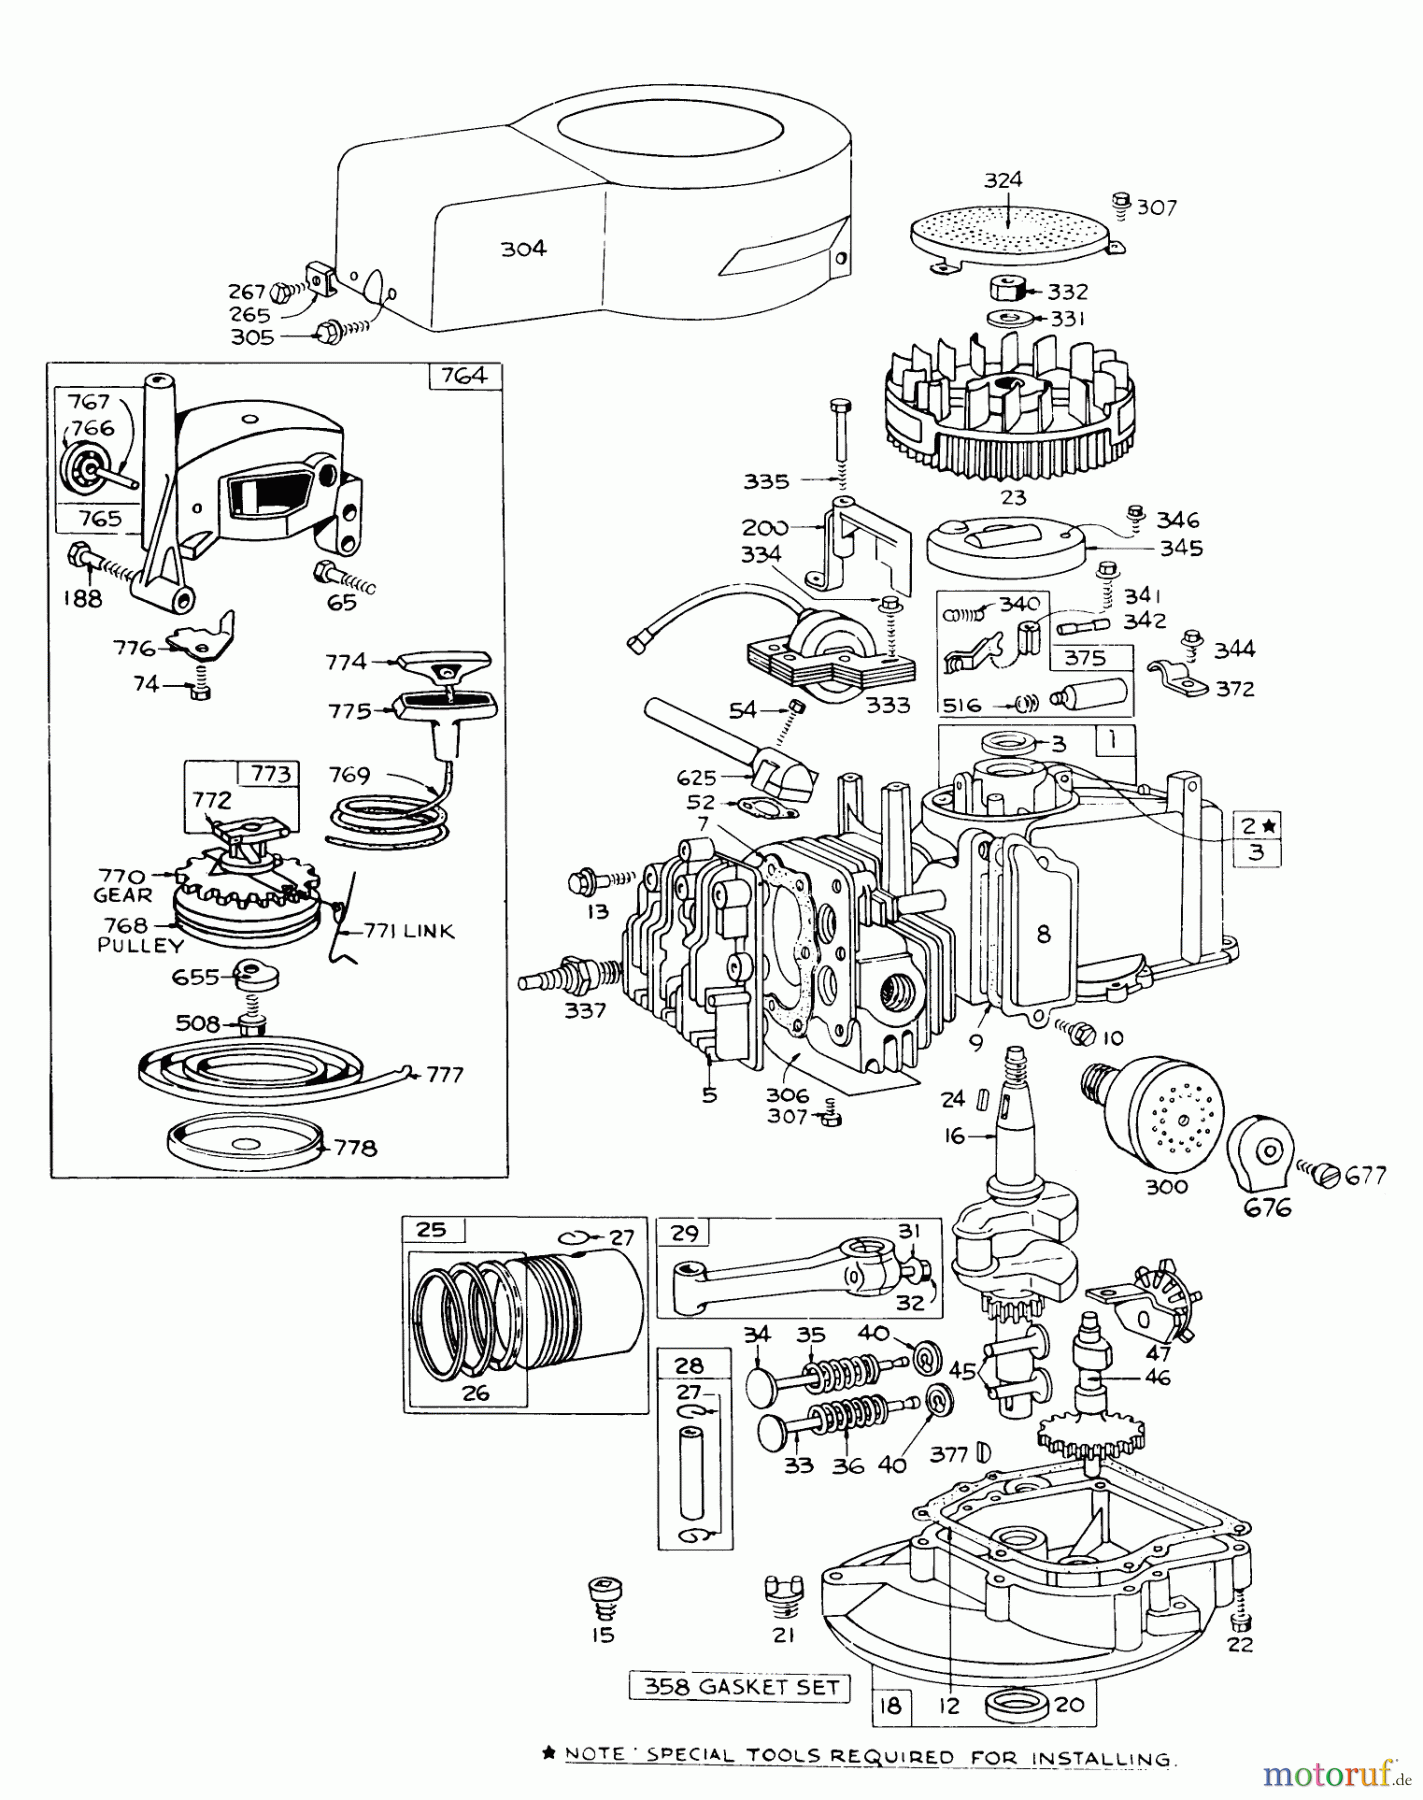  Toro Neu Mowers, Walk-Behind Seite 1 16273 - Toro Whirlwind Lawnmower, 1976 (6000001-6999999) ENGINE BRIGGS & STRATTON MODEL 92508-0904-01 FOR 19